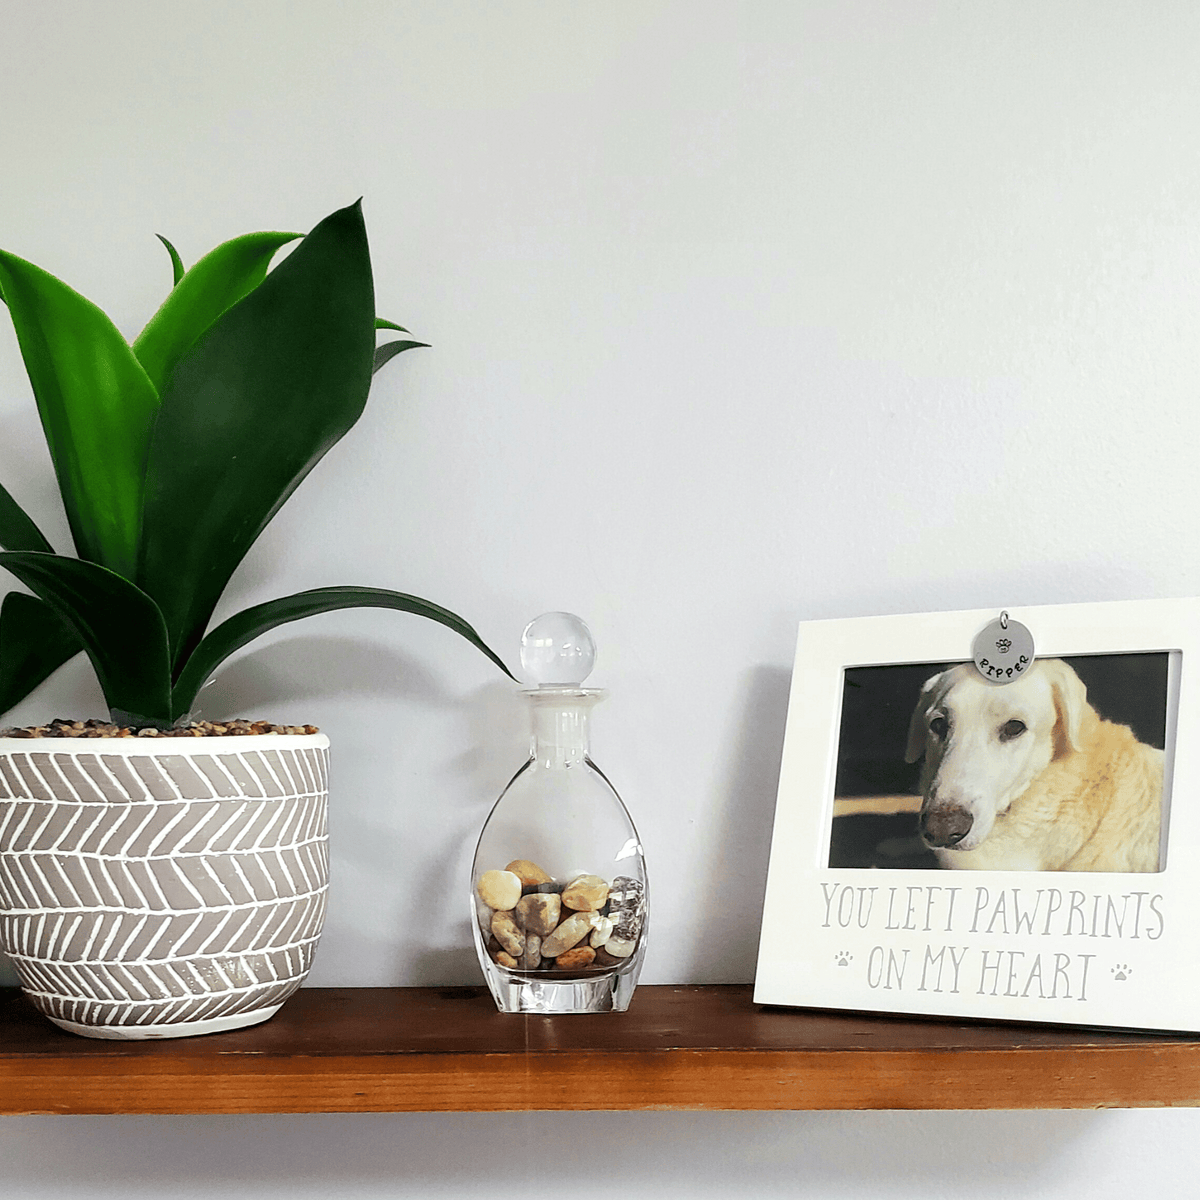  Personalized Pet Loss Sympathy &amp; Memorial Gifts - Pet memorial picture frame personalized